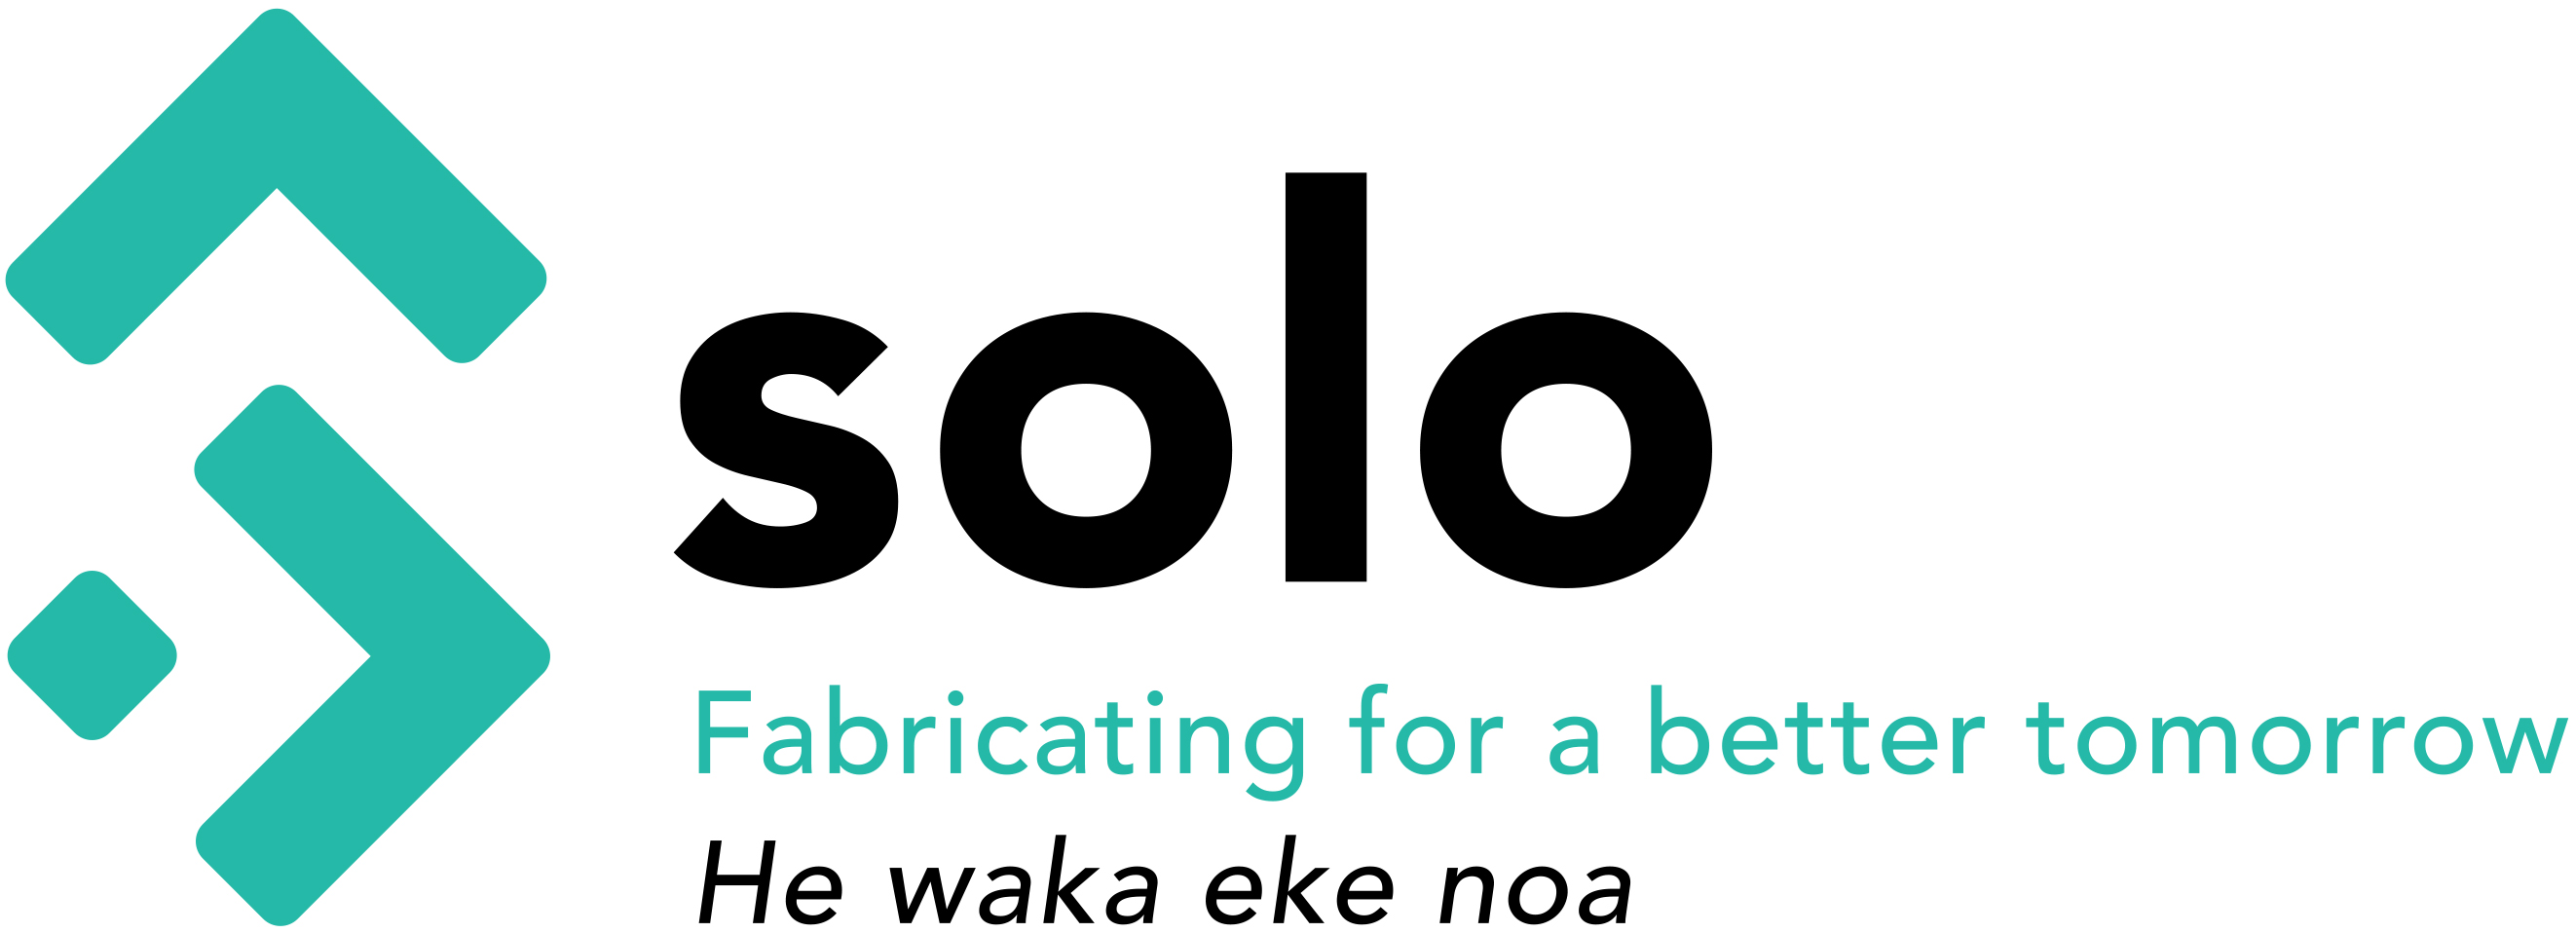 Solo logo with tagline RGB